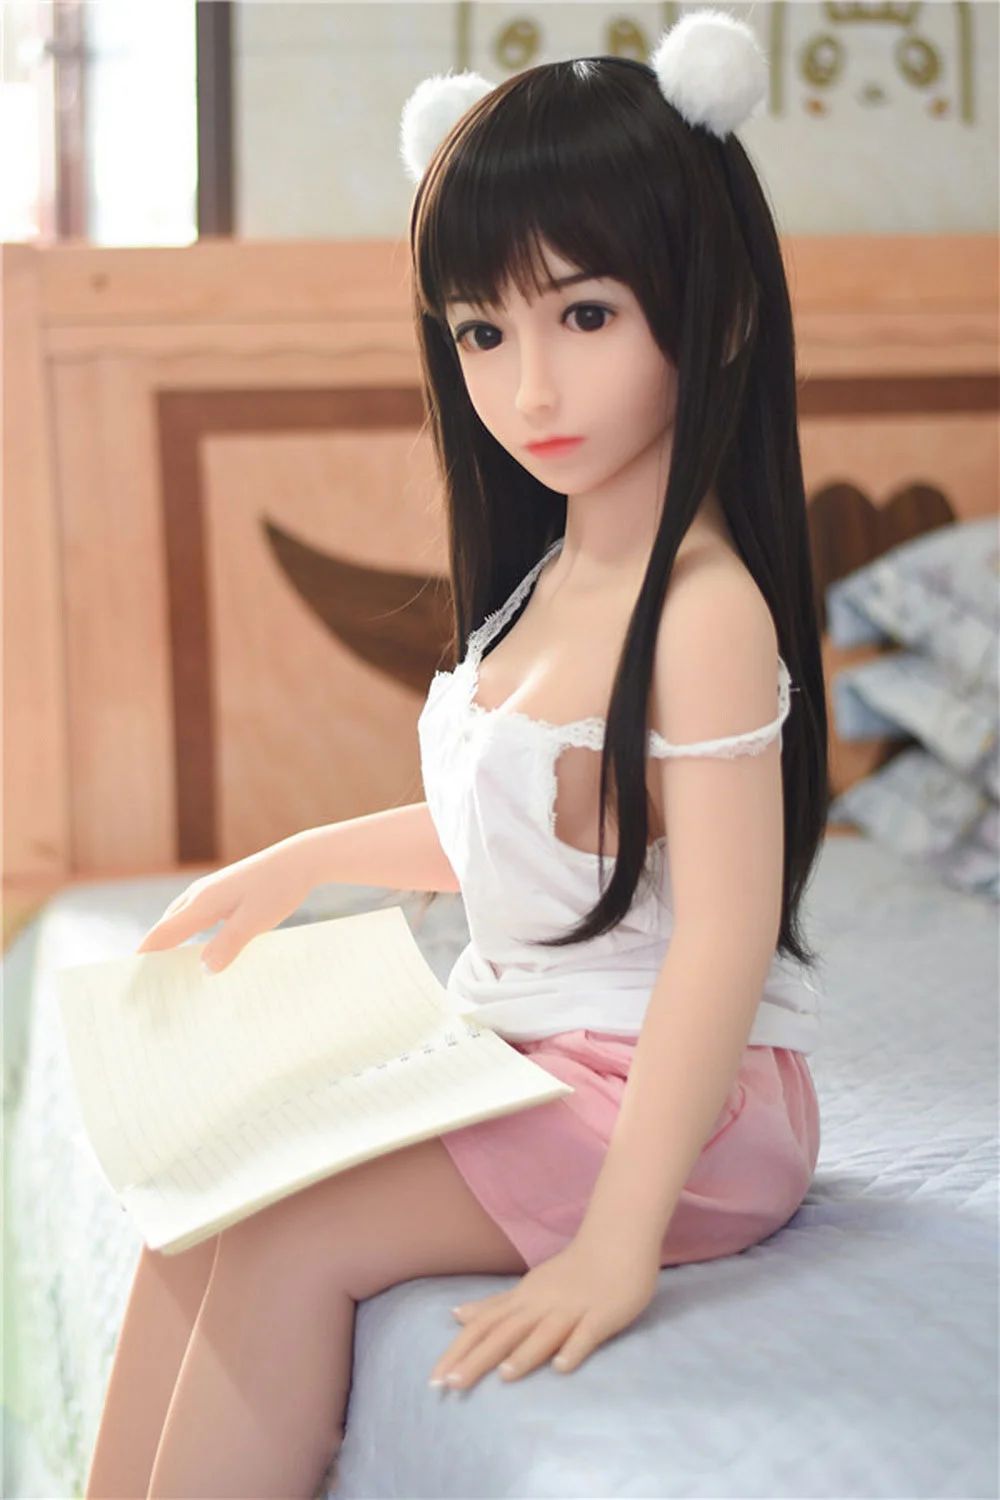 mini sex doll3 4